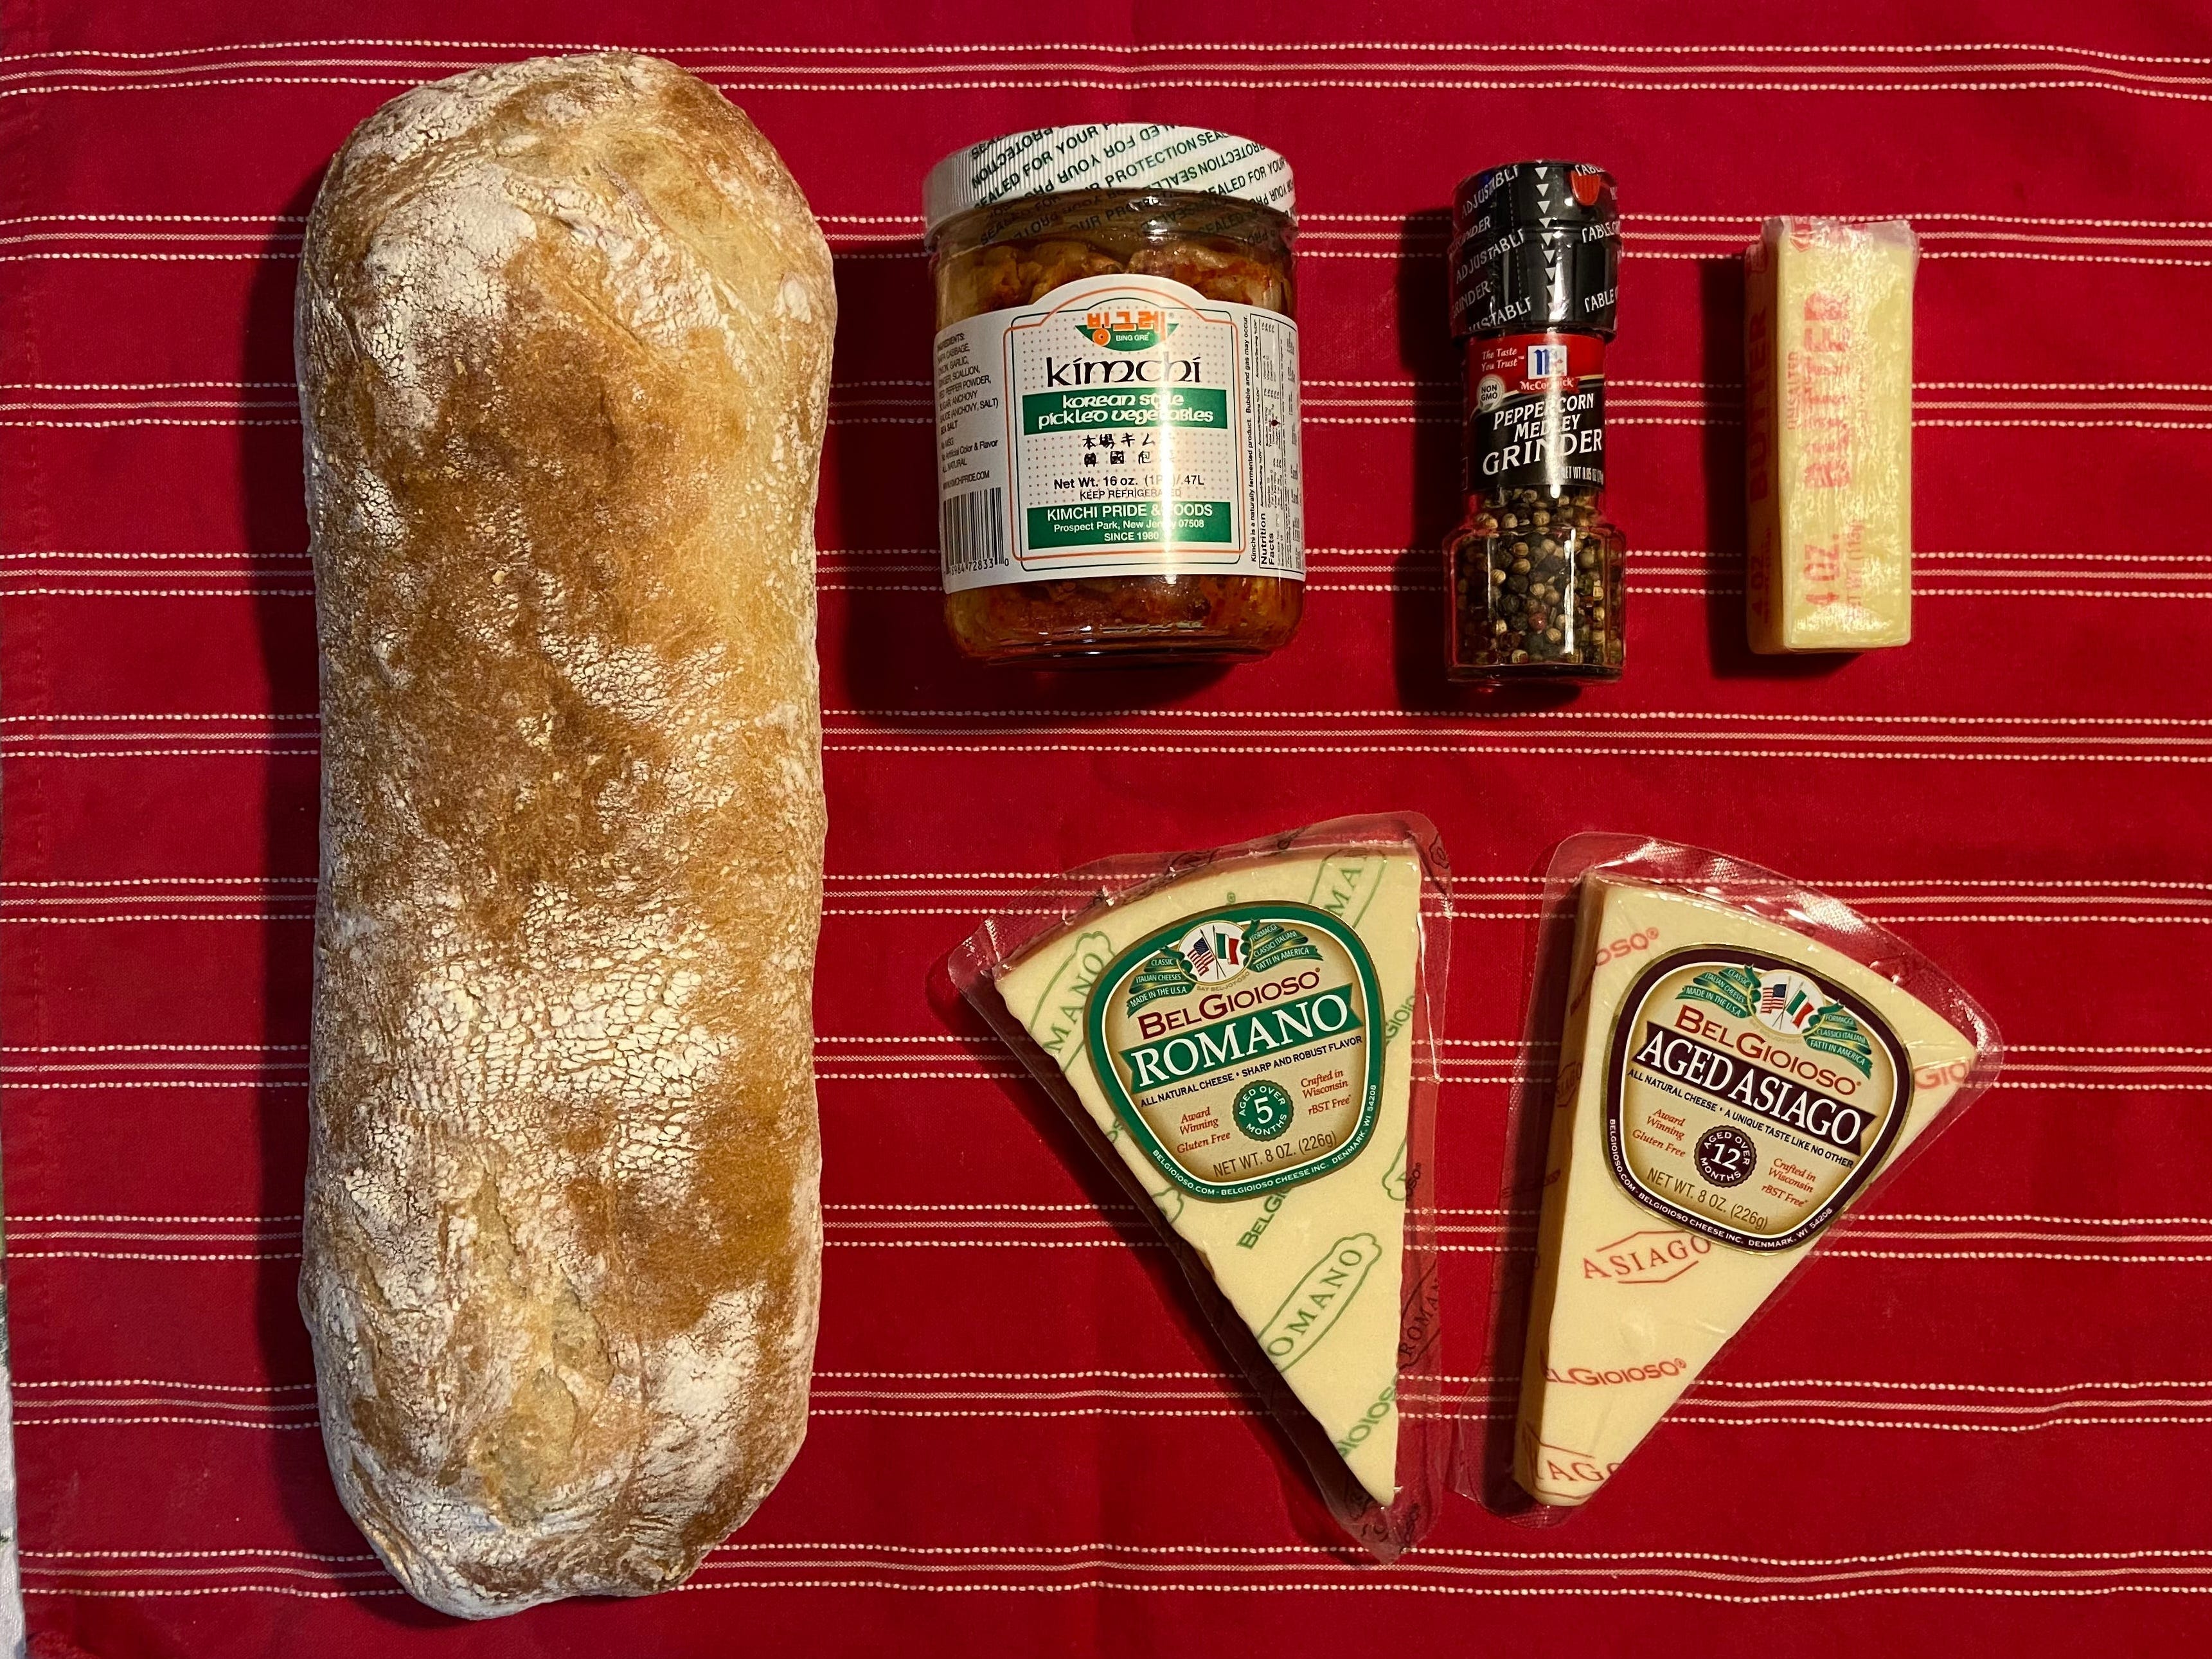 Zutaten auf einem Geschirrtuch, darunter eine Ladung Ciabatta-Brot, Romano- und Asiago-Käse, eine Flasche Kimchi, Pfefferkörner und Butter.